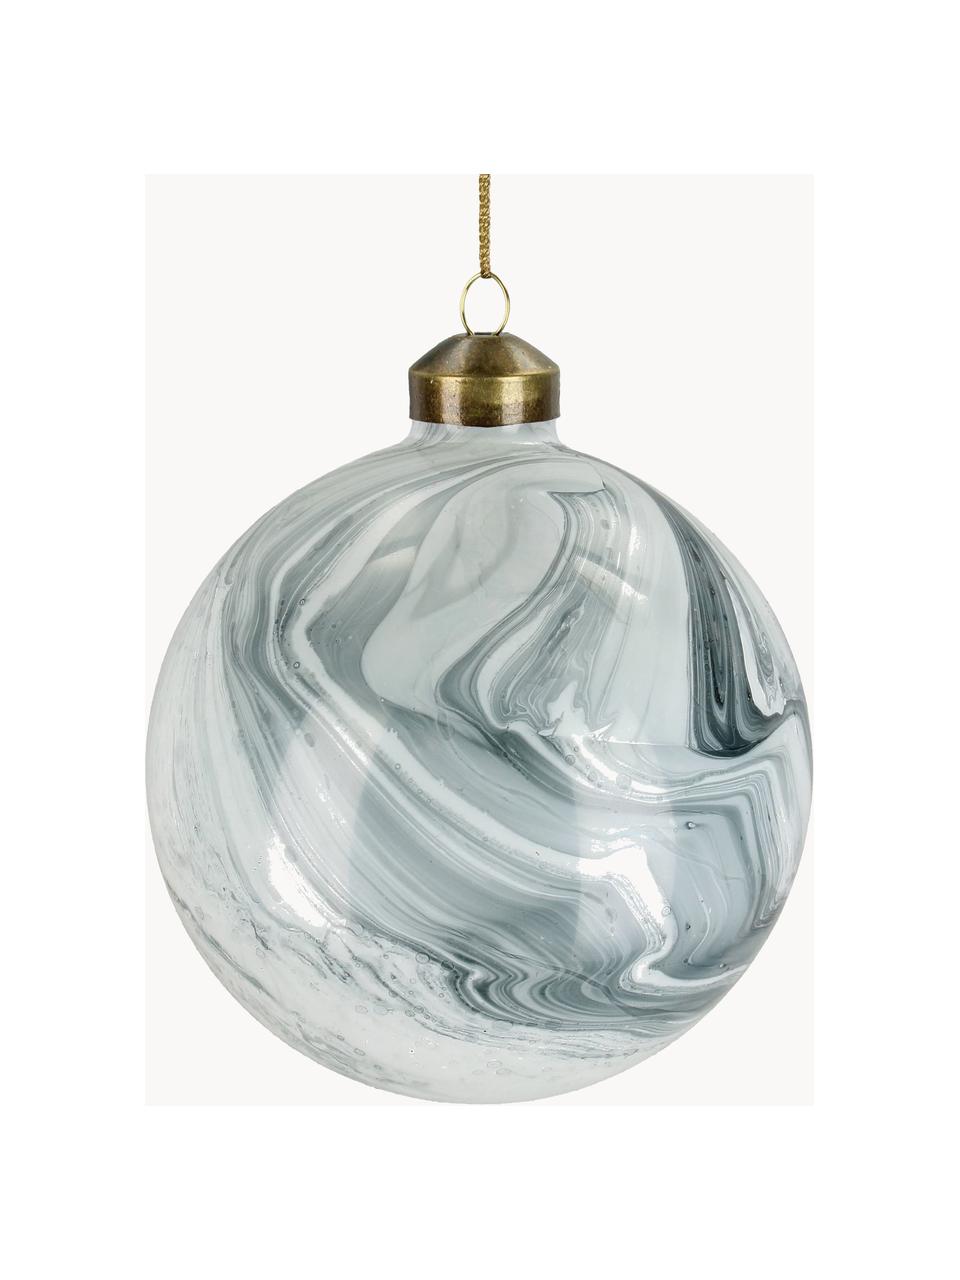 Weihnachtskugeln Marble in Marmoroptik, 6 Stück, Glas, Graublau, Weiss, hell, Ø 10 cm